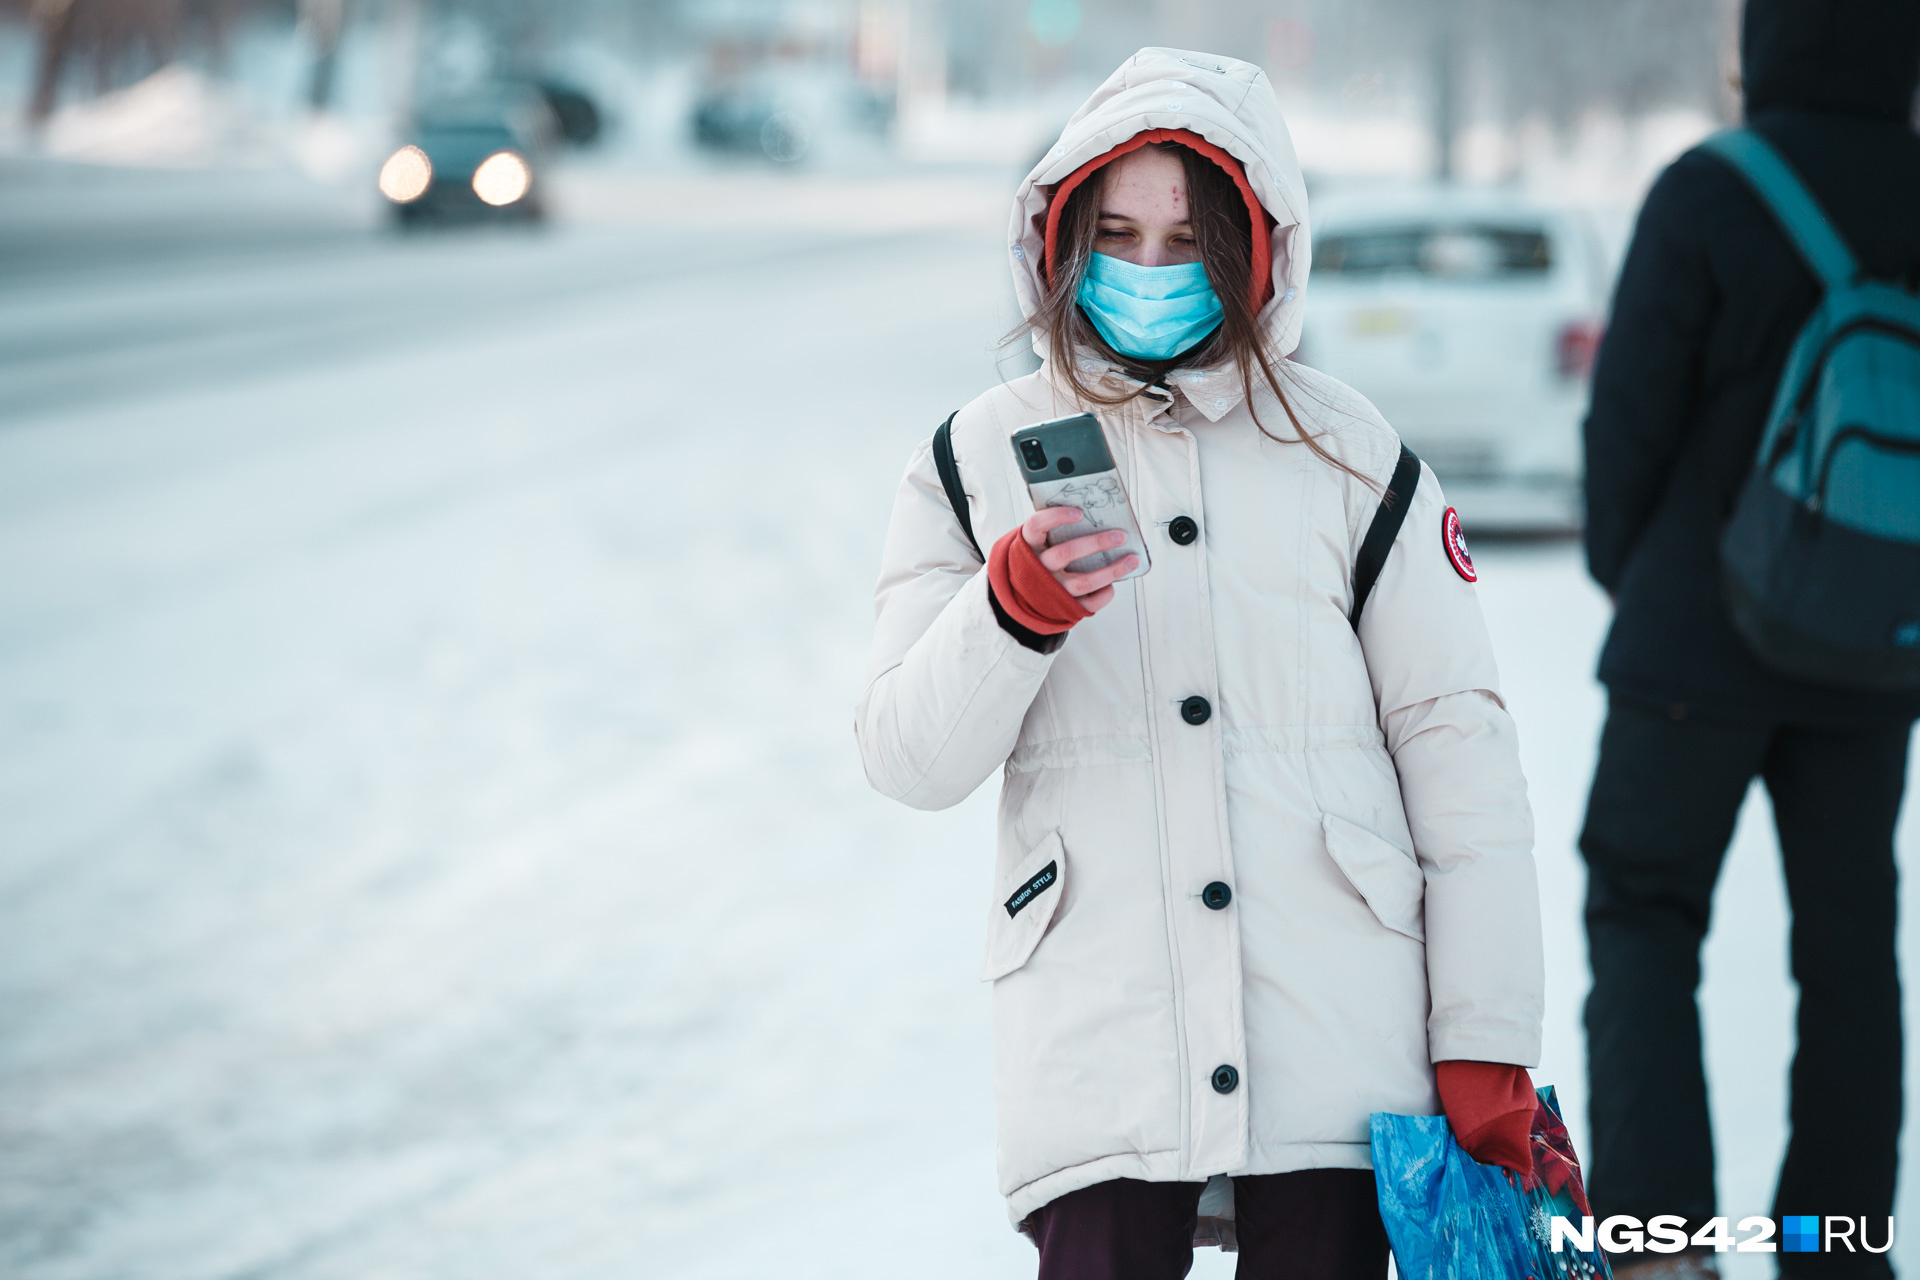 Медики советуют одеваться теплее и многослойно, чтобы не получить обморожение